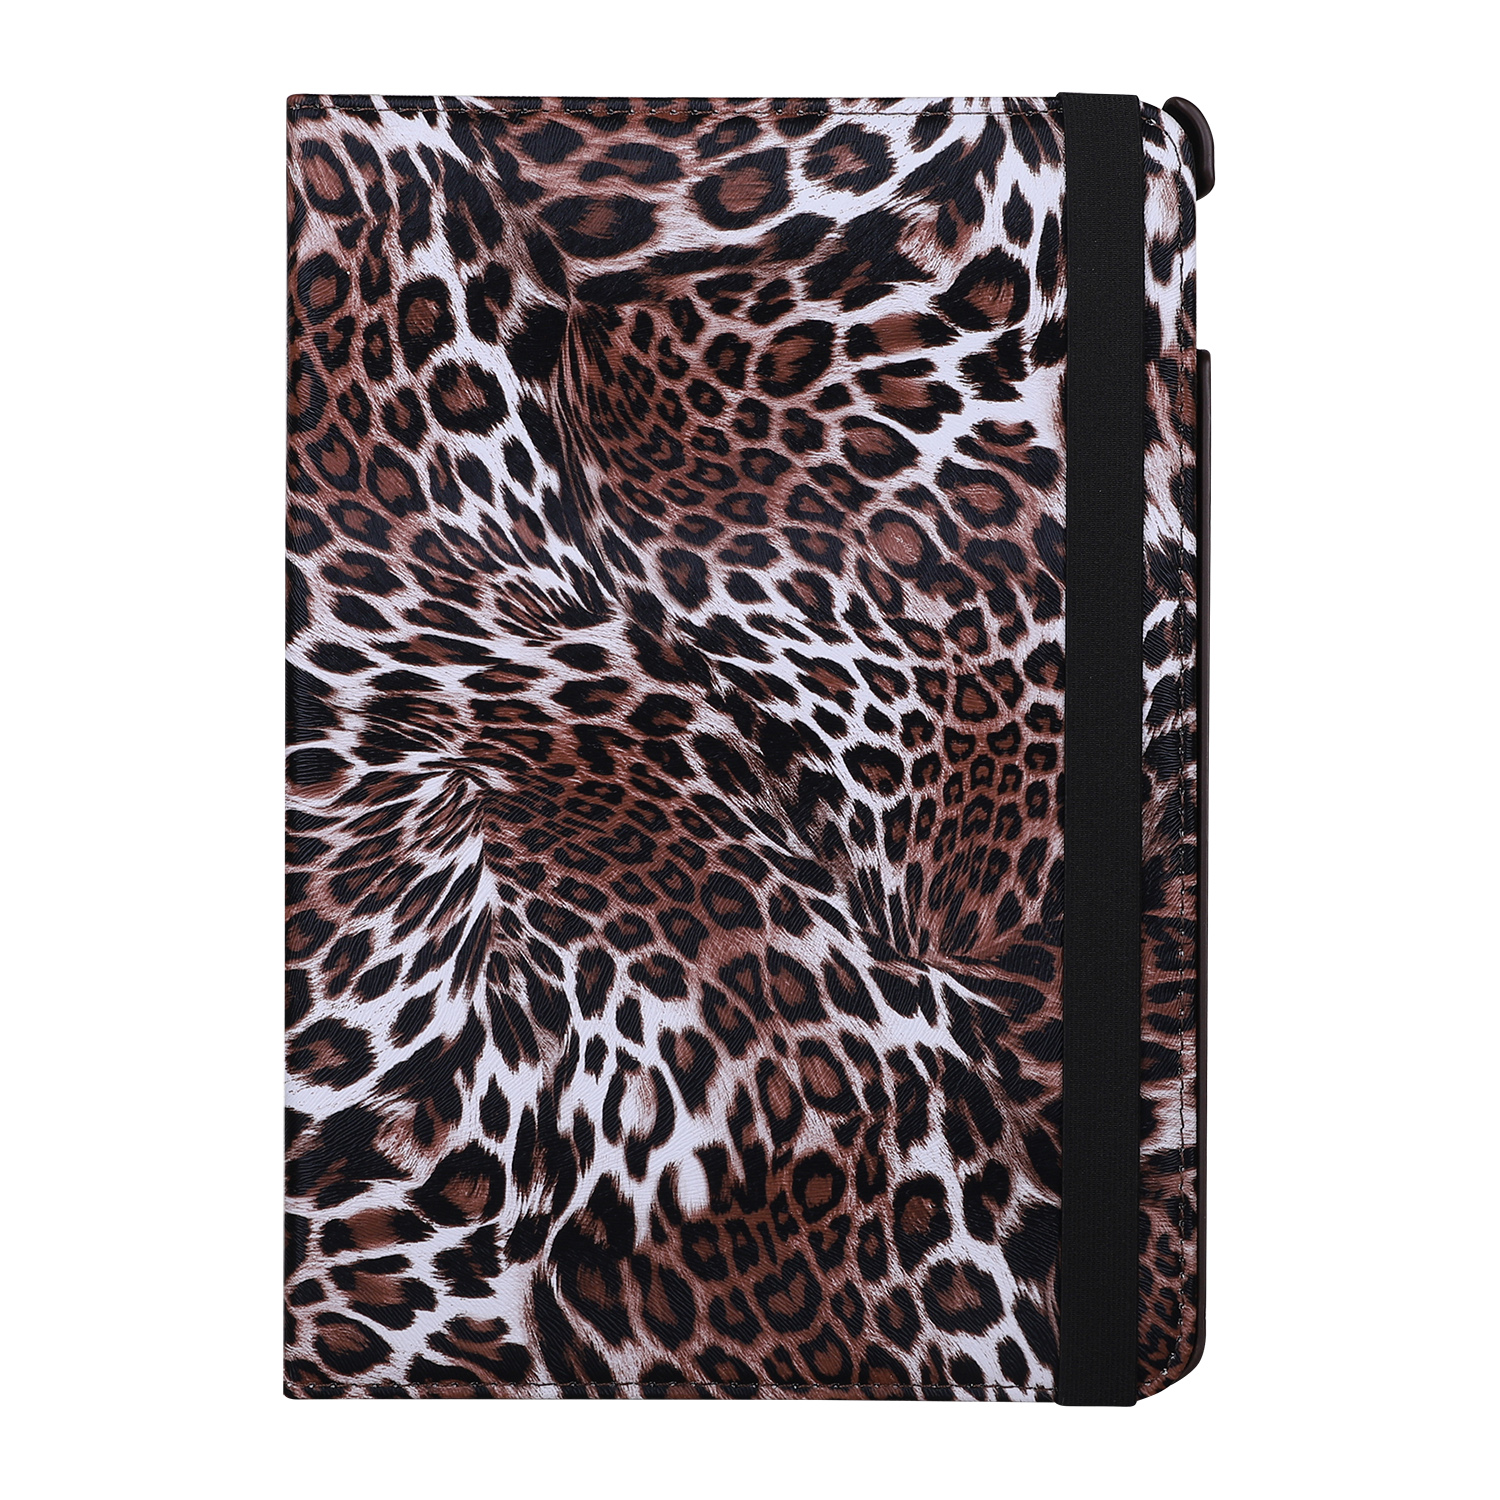 Leopard fodral, iPad 10.2 / Pro 10.5 / Air 3, brun